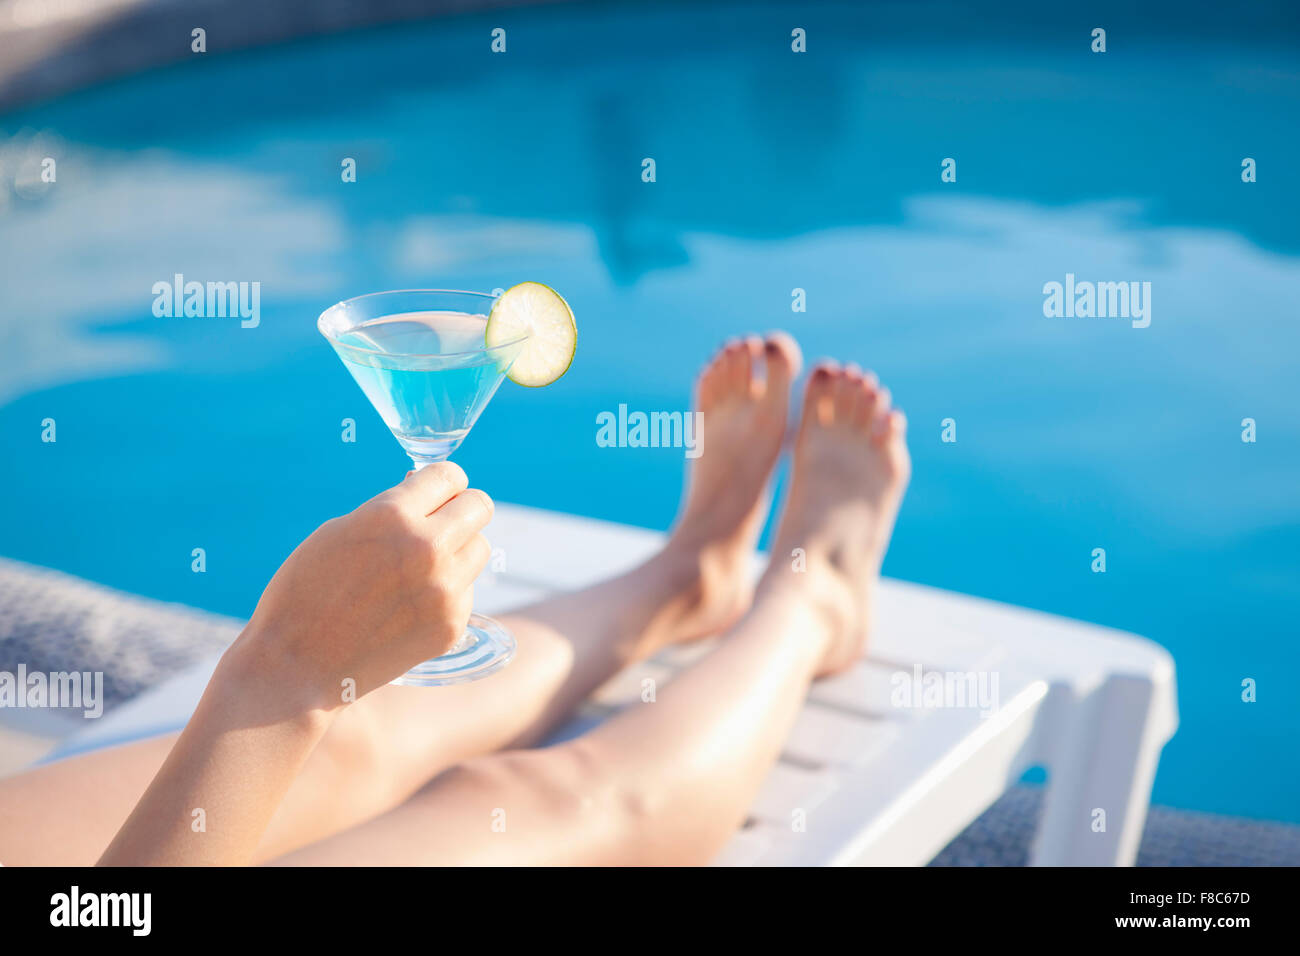 Bicchiere da cocktail con fetta di lime detenute da una sola persona che mostra una mano e le gambe con lo sfondo della piscina Foto Stock